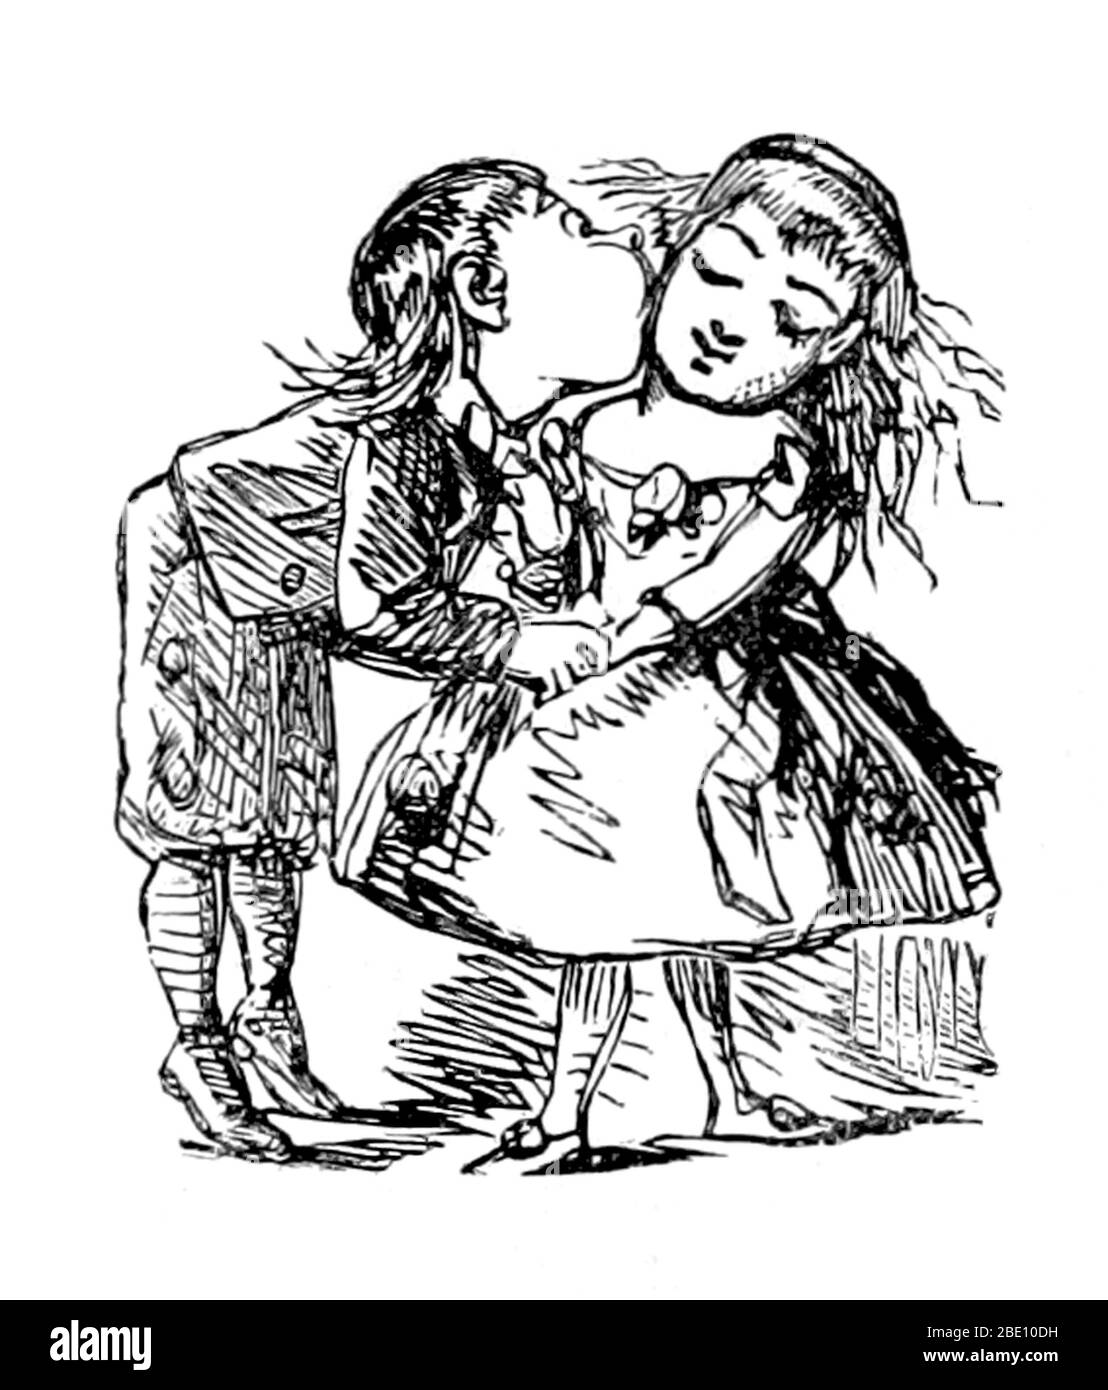 Der Valentinstag, auch bekannt als der Valentinstag oder das Fest des Heiligen Valentin, ist ein Feiertag, der jedes Jahr am 14. Februar begangen wird. Es wird in vielen Ländern der Welt gefeiert, obwohl es in den meisten nicht ein Feiertag ist. Der Tag wurde erstmals mit romantischer Liebe im mittelalterlichen Europa verbunden, als die Tradition der höfischen Liebe blühte. Im England des 18. Jahrhunderts entwickelte sich die Insel zu einem Anlass, bei dem die Liebenden ihre Liebe zum anderen zum Ausdruck brachten, indem sie Blumen präsentierten, Süßwaren anboten und Grußkarten schickten. Valentinstag Symbole, die heute verwendet werden, sind die Herz-geformt aus Stockfoto